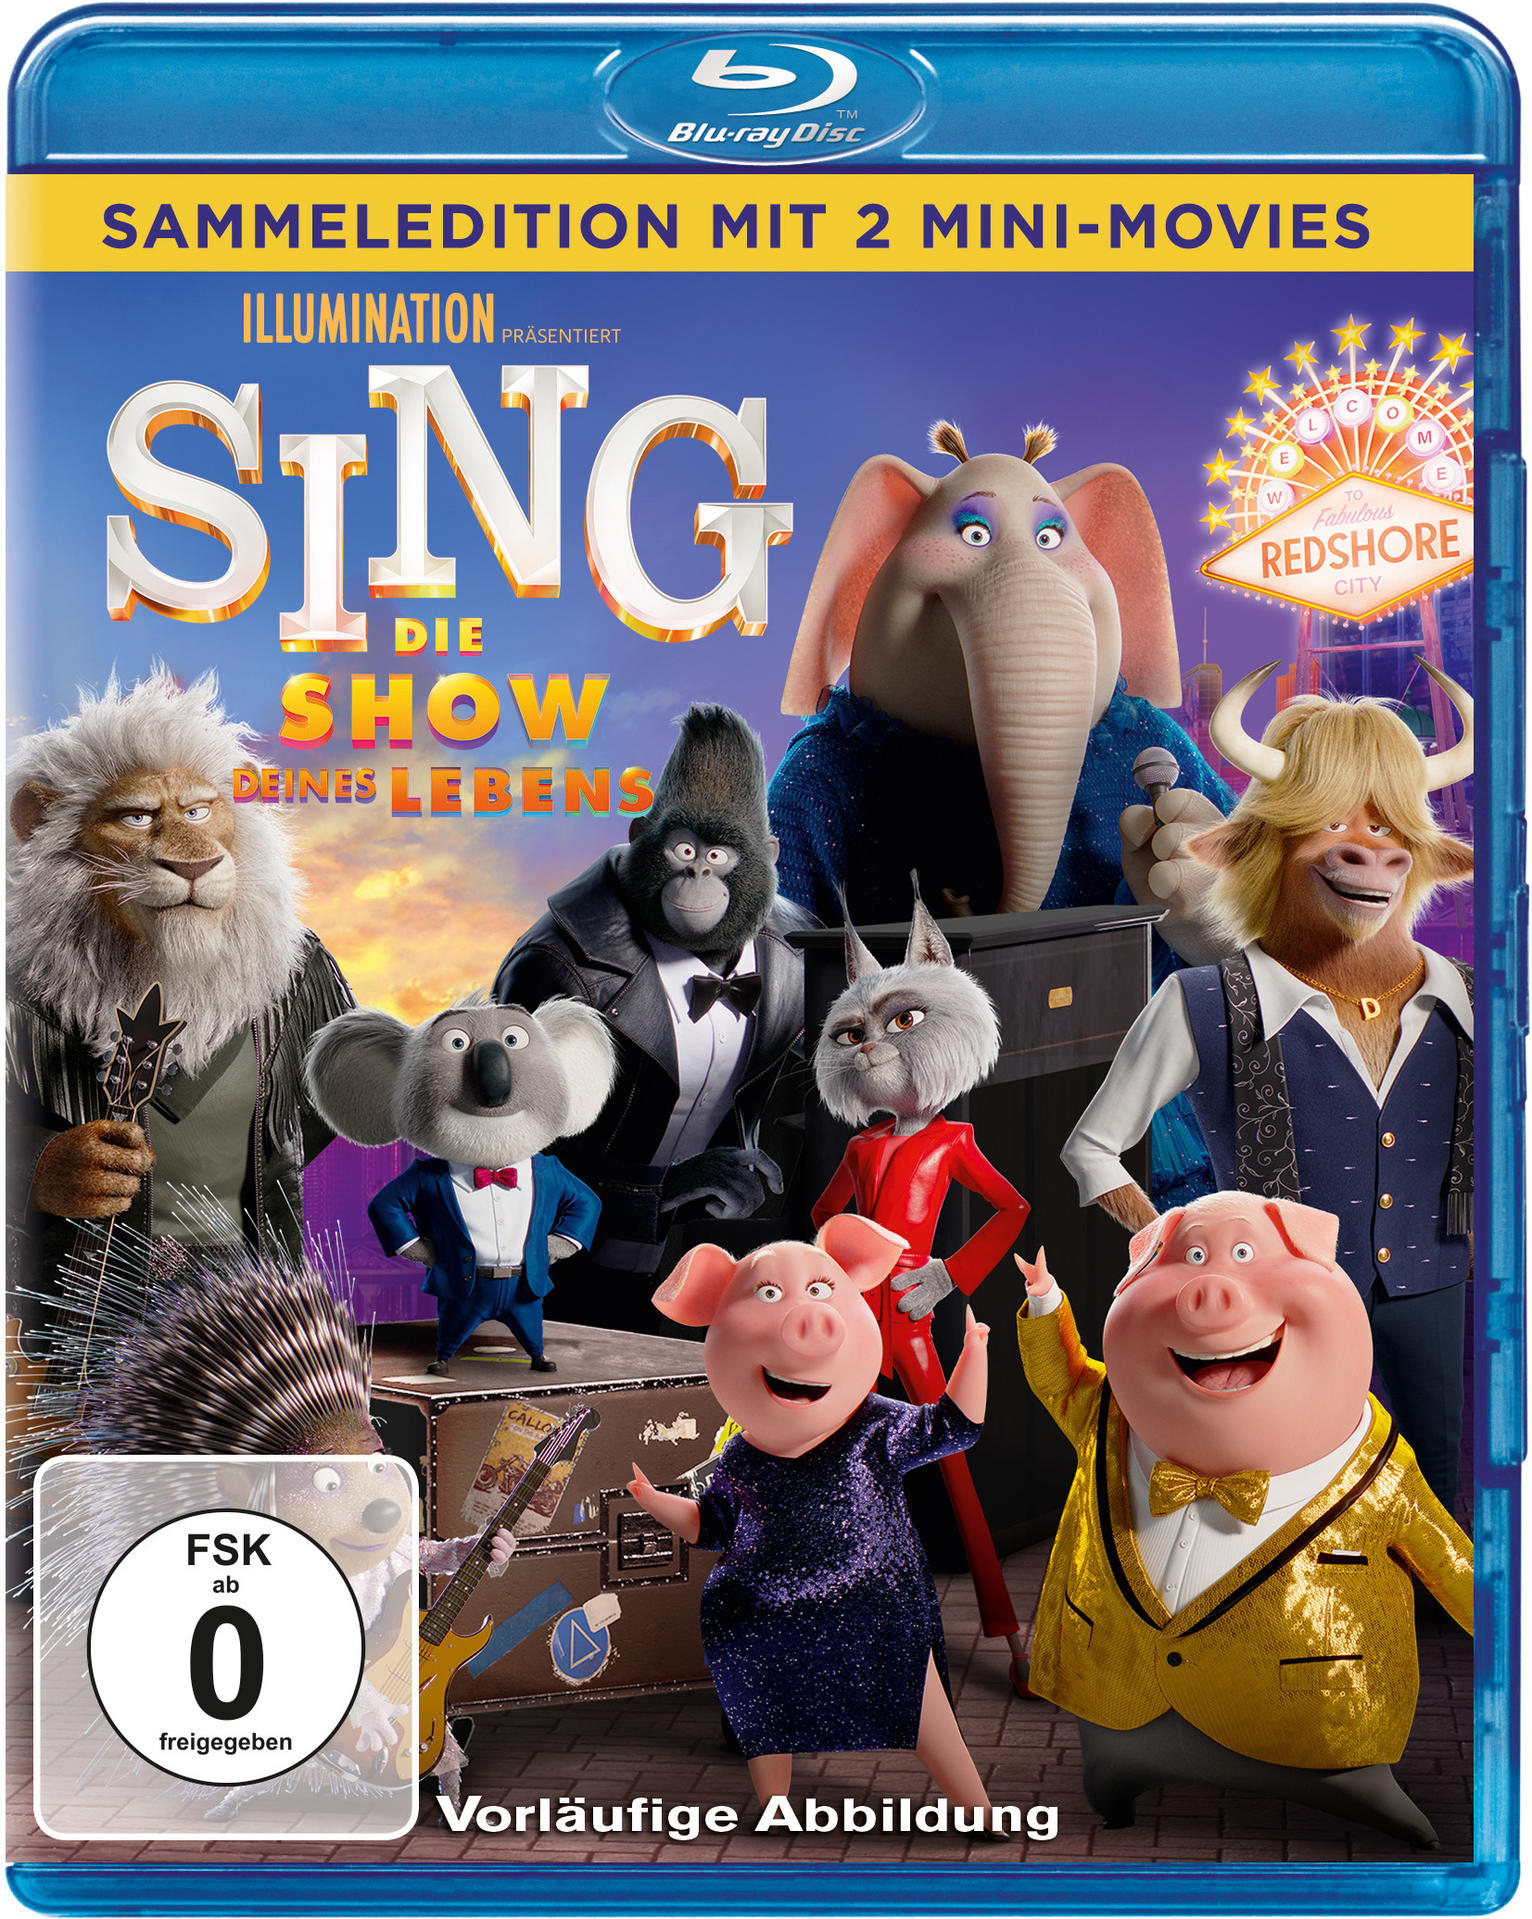 Die Lebens Sing Blu-ray deines - Show